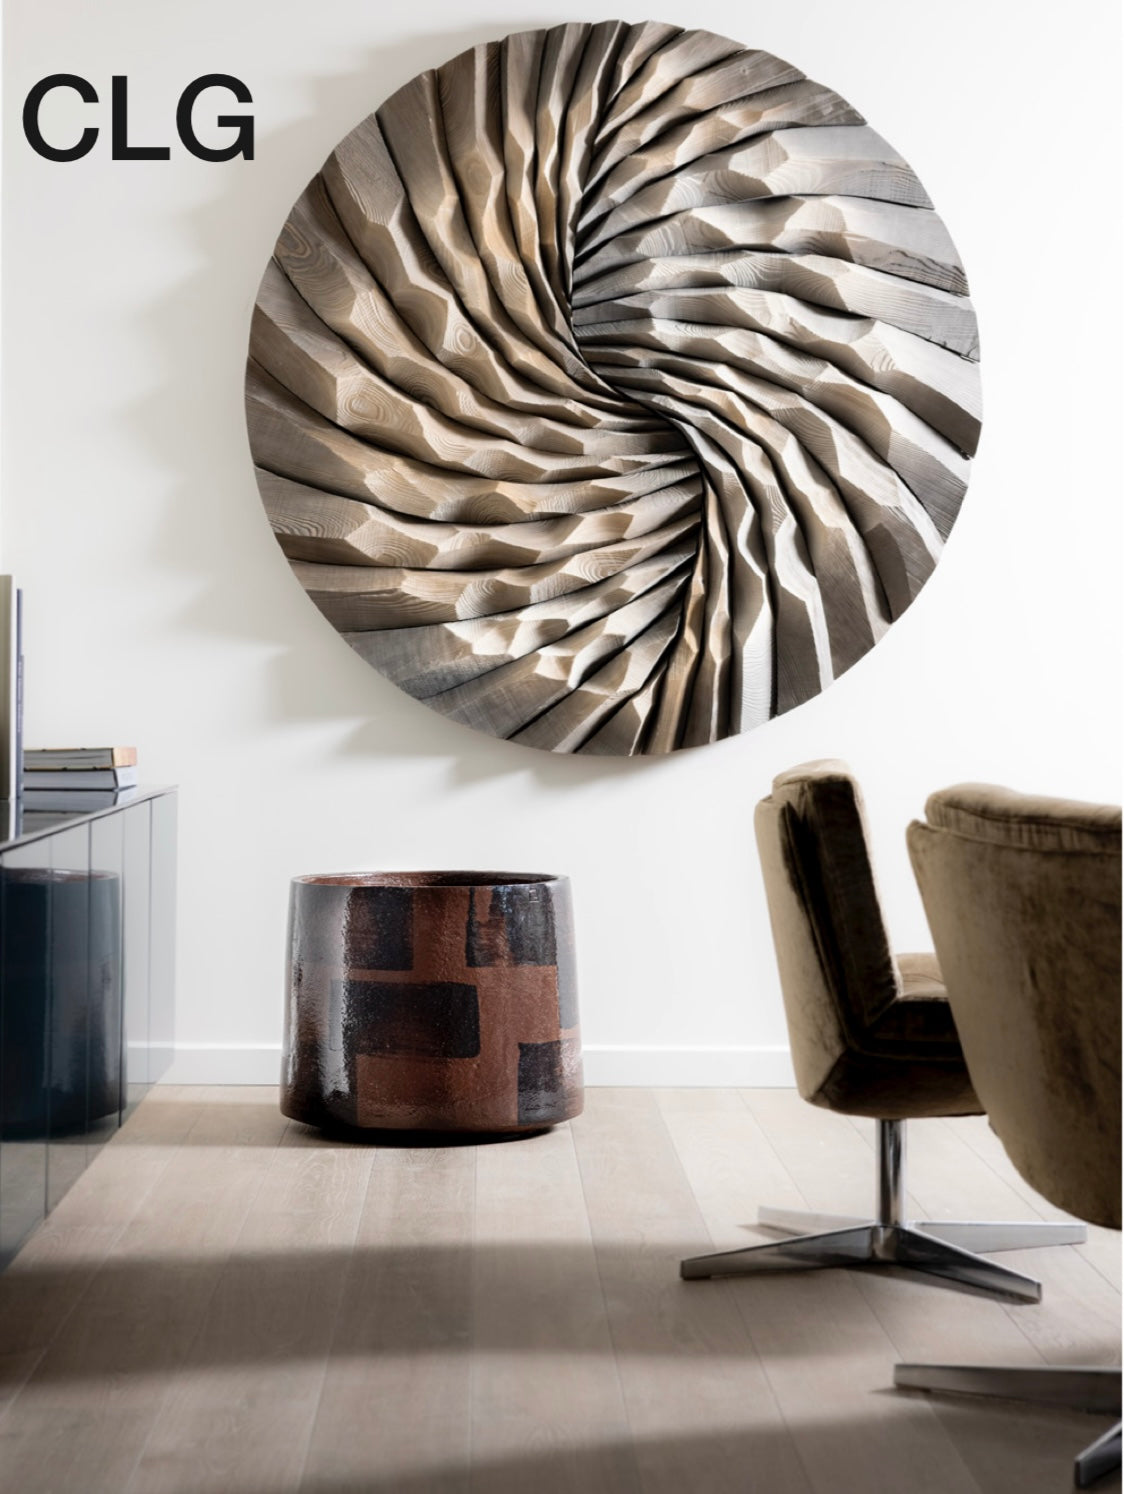 Verlieben Sie sich in das exklusive Model CLG von Atelier Vierkant – elegantes, handgefertigtes Terrakotta-Blumengefäß für Ihr Zuhause! 65kg. Shoppen!